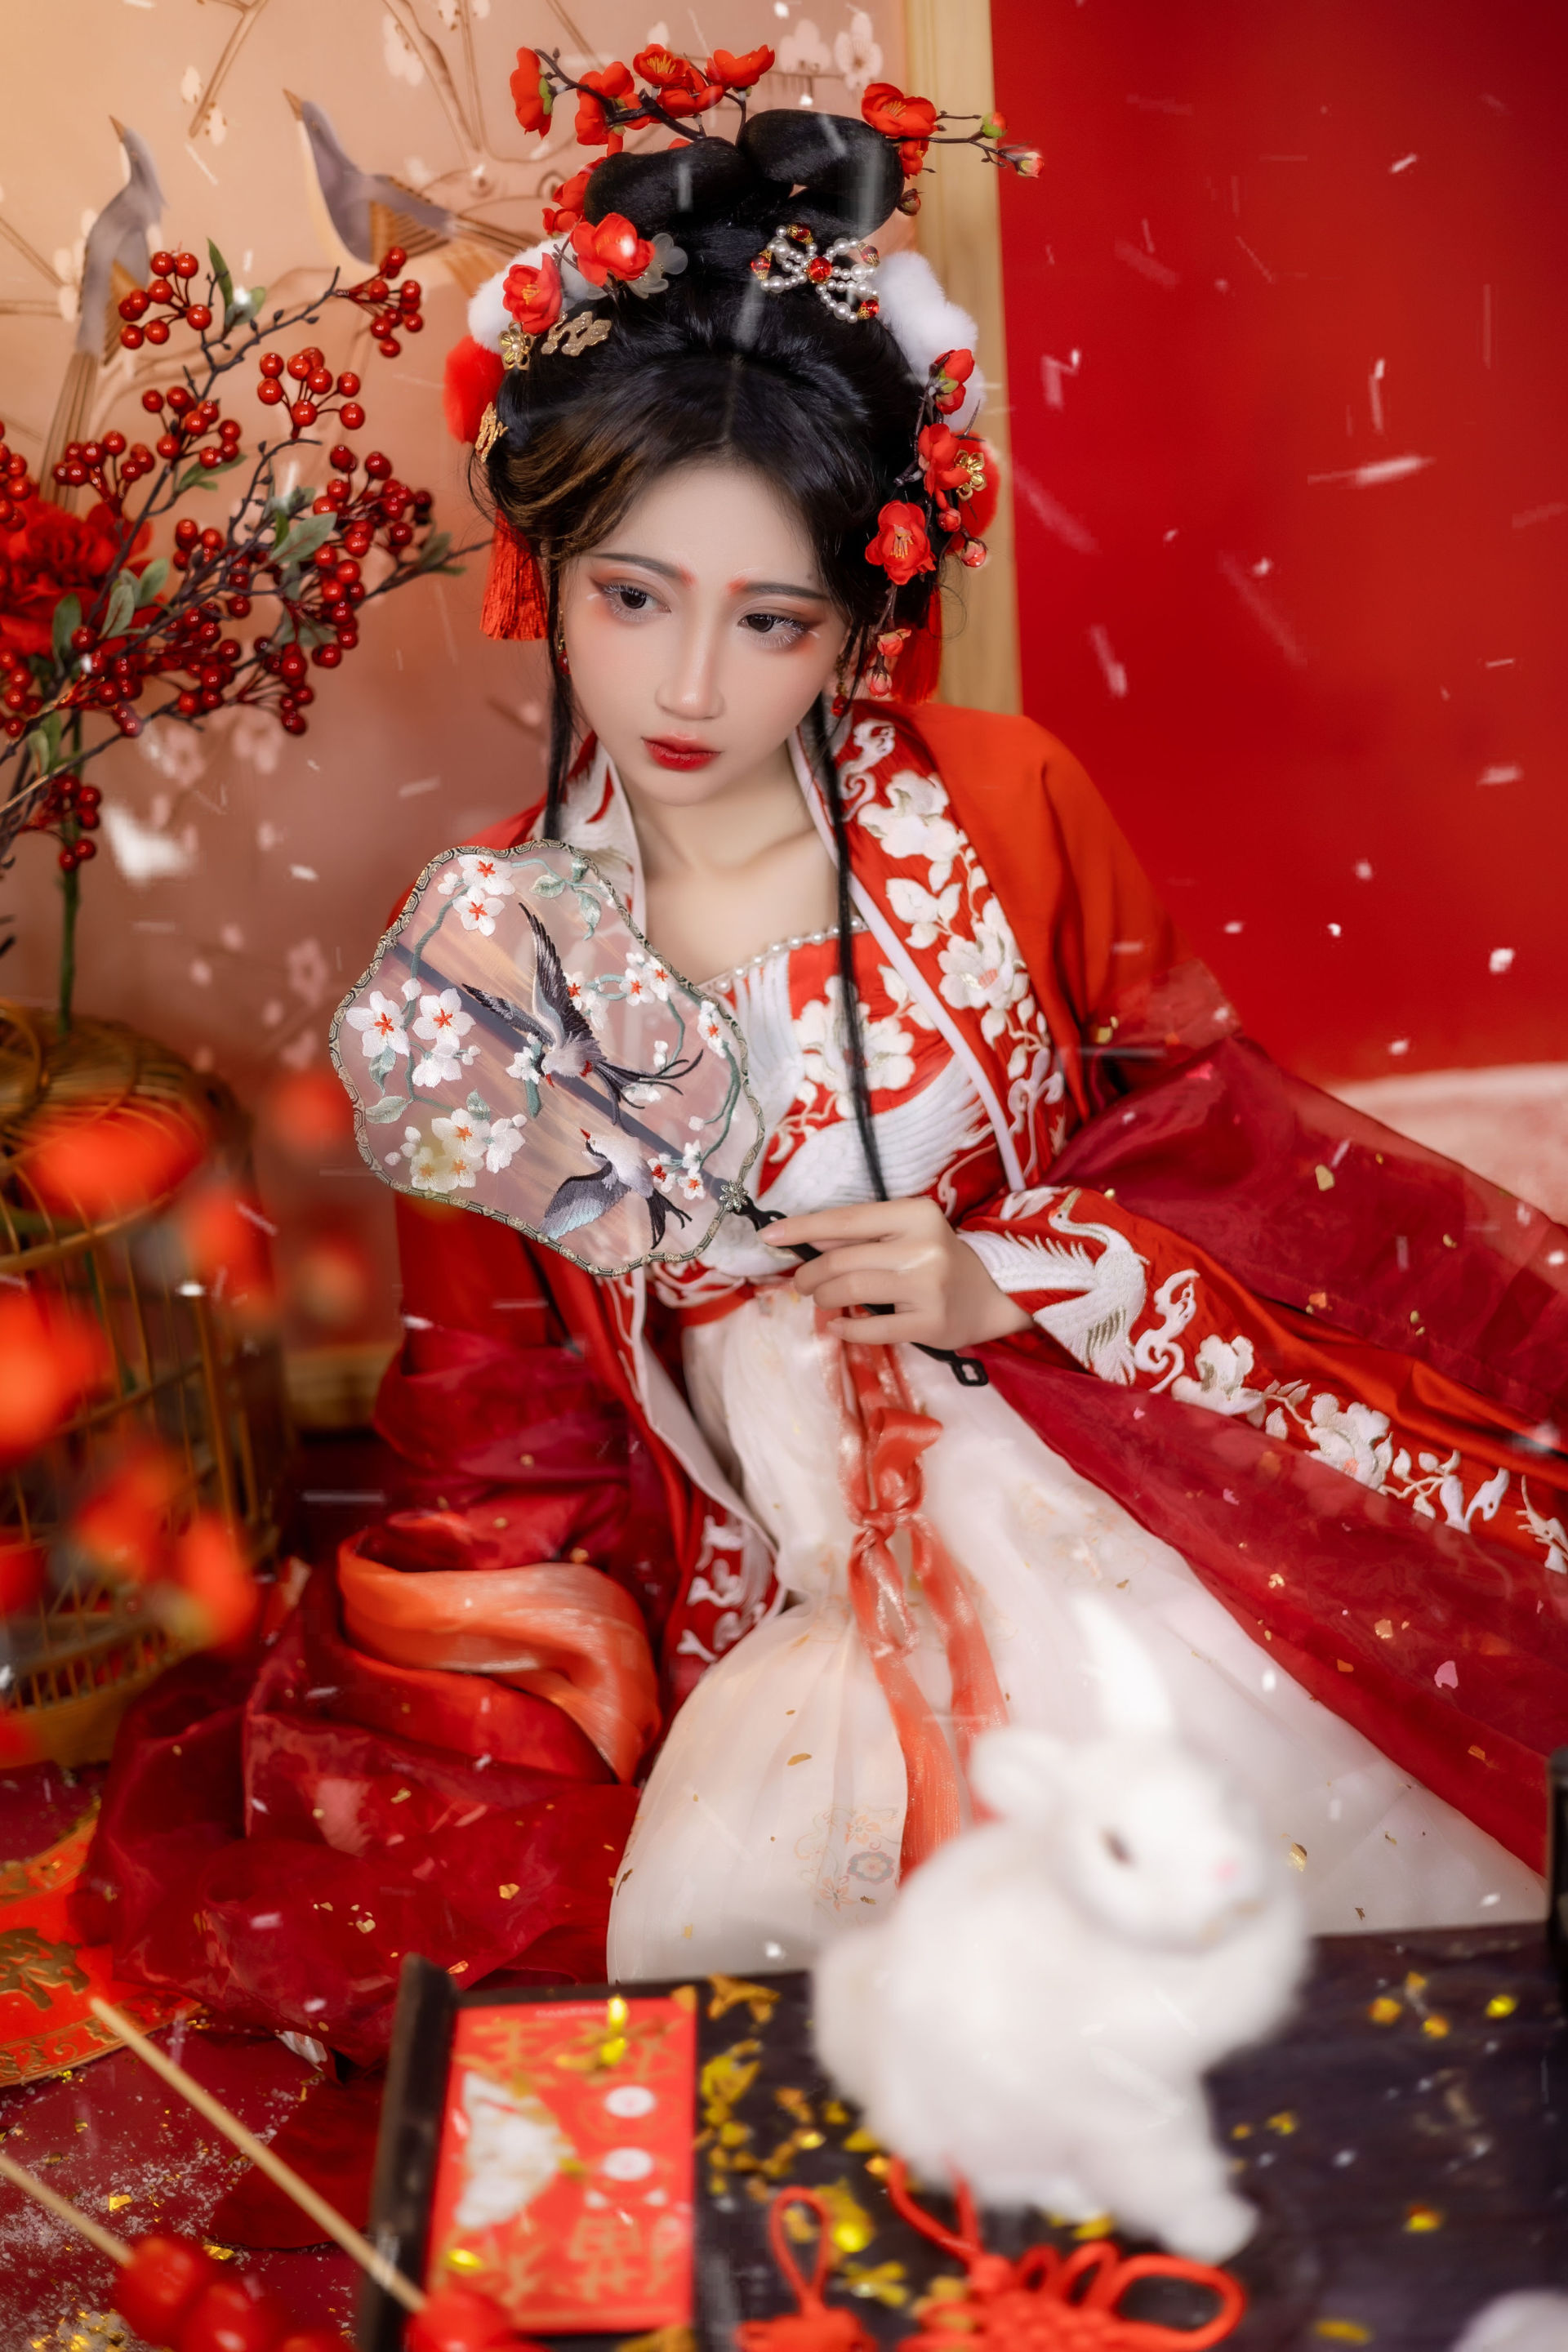 阳春白雪 古典 红色 中国风 美人 美图